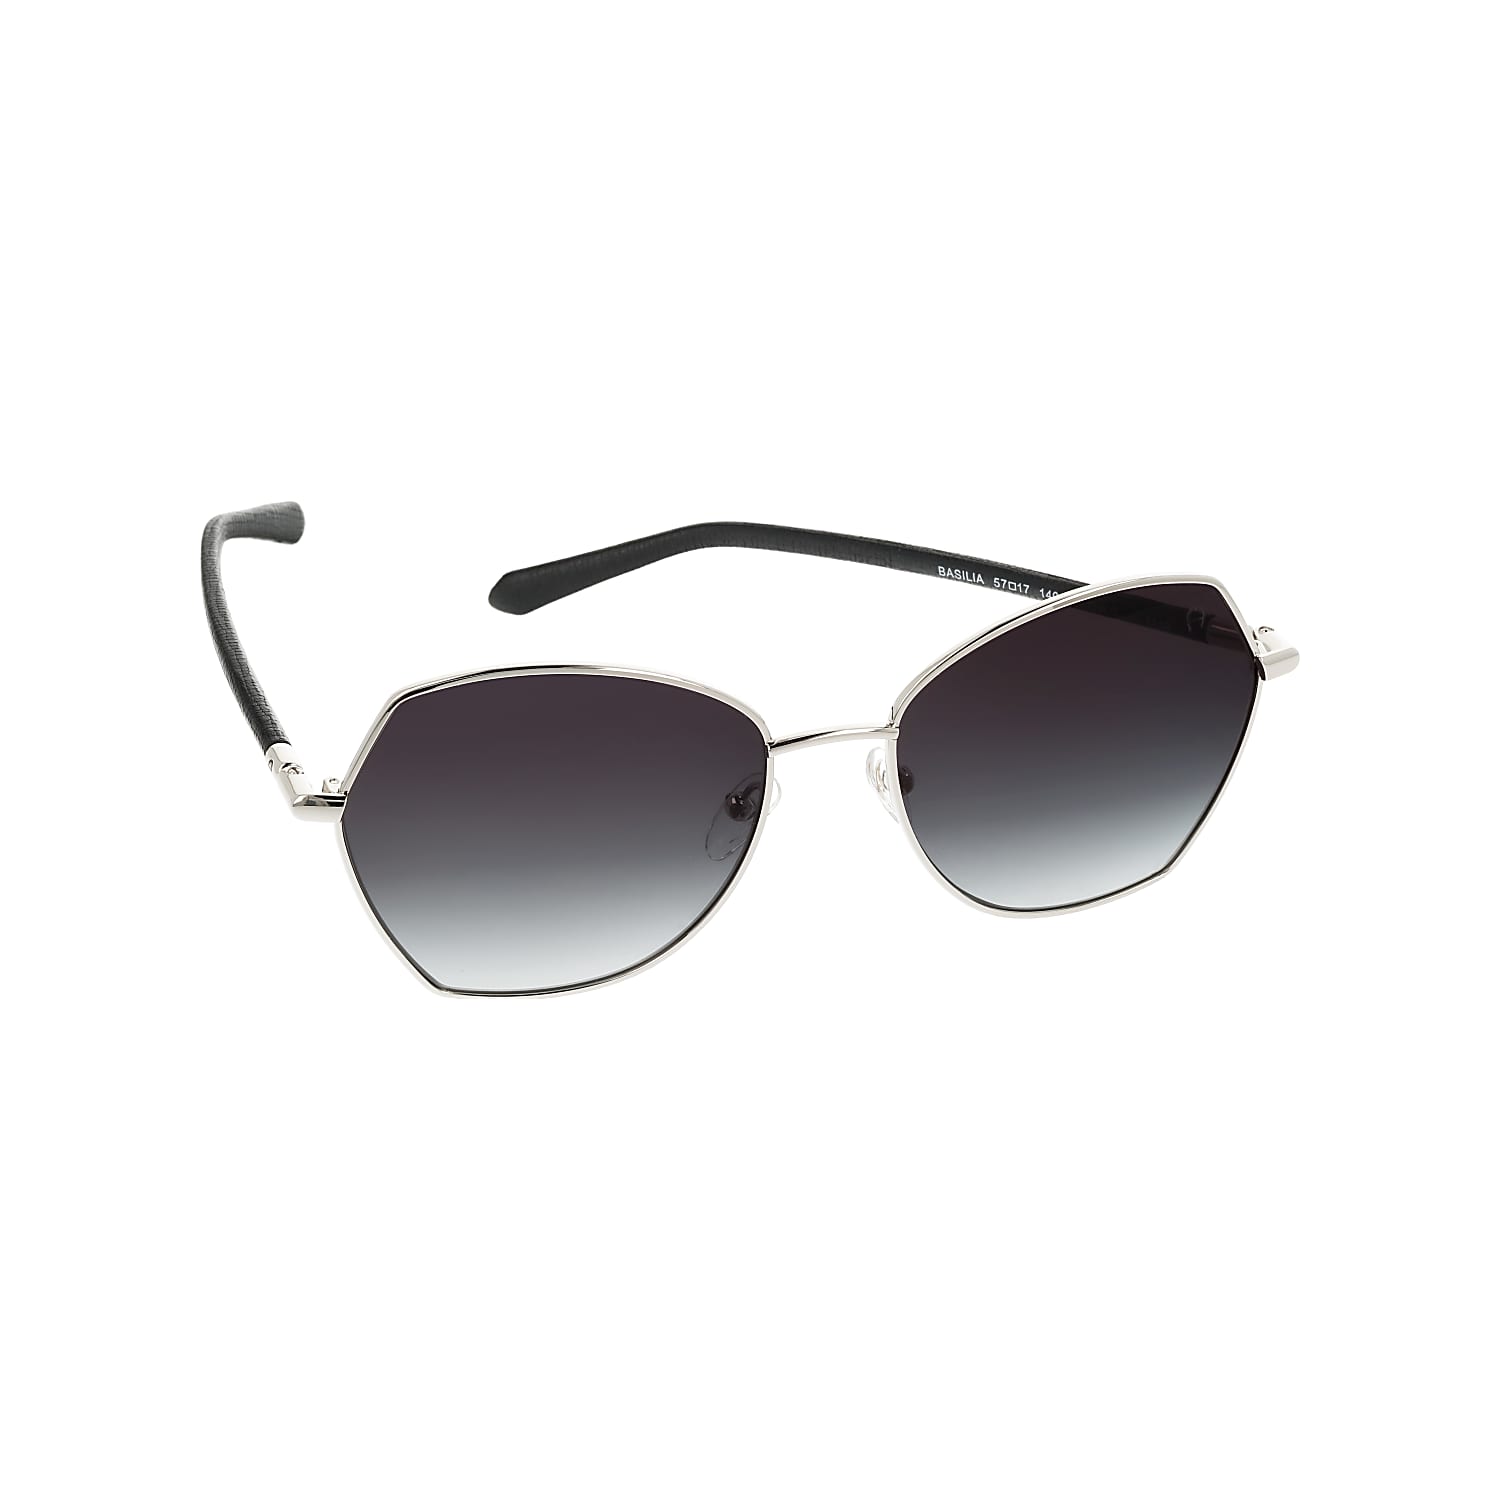 Basilia Sunglasses